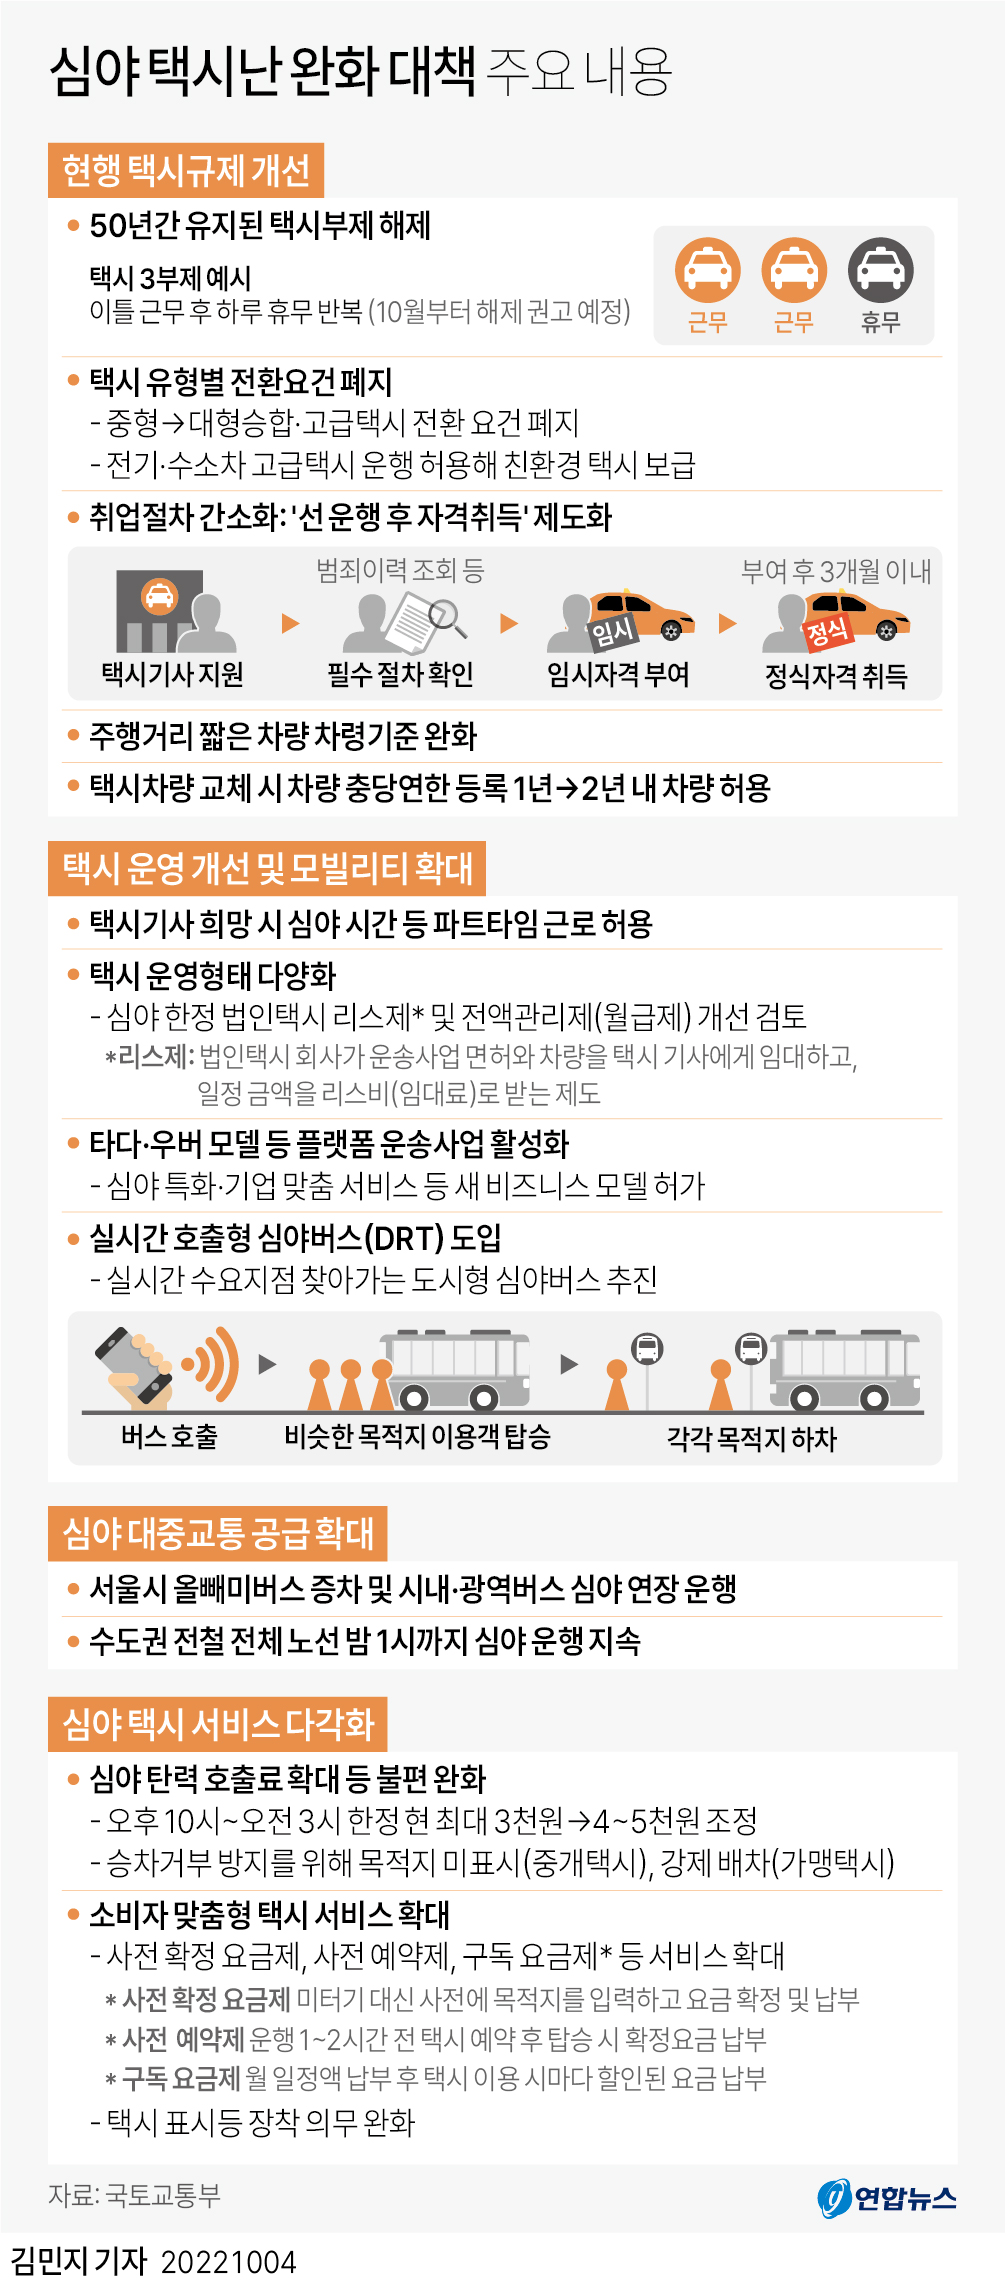 [그래픽] 심야 택시난 완화 대책 주요 내용